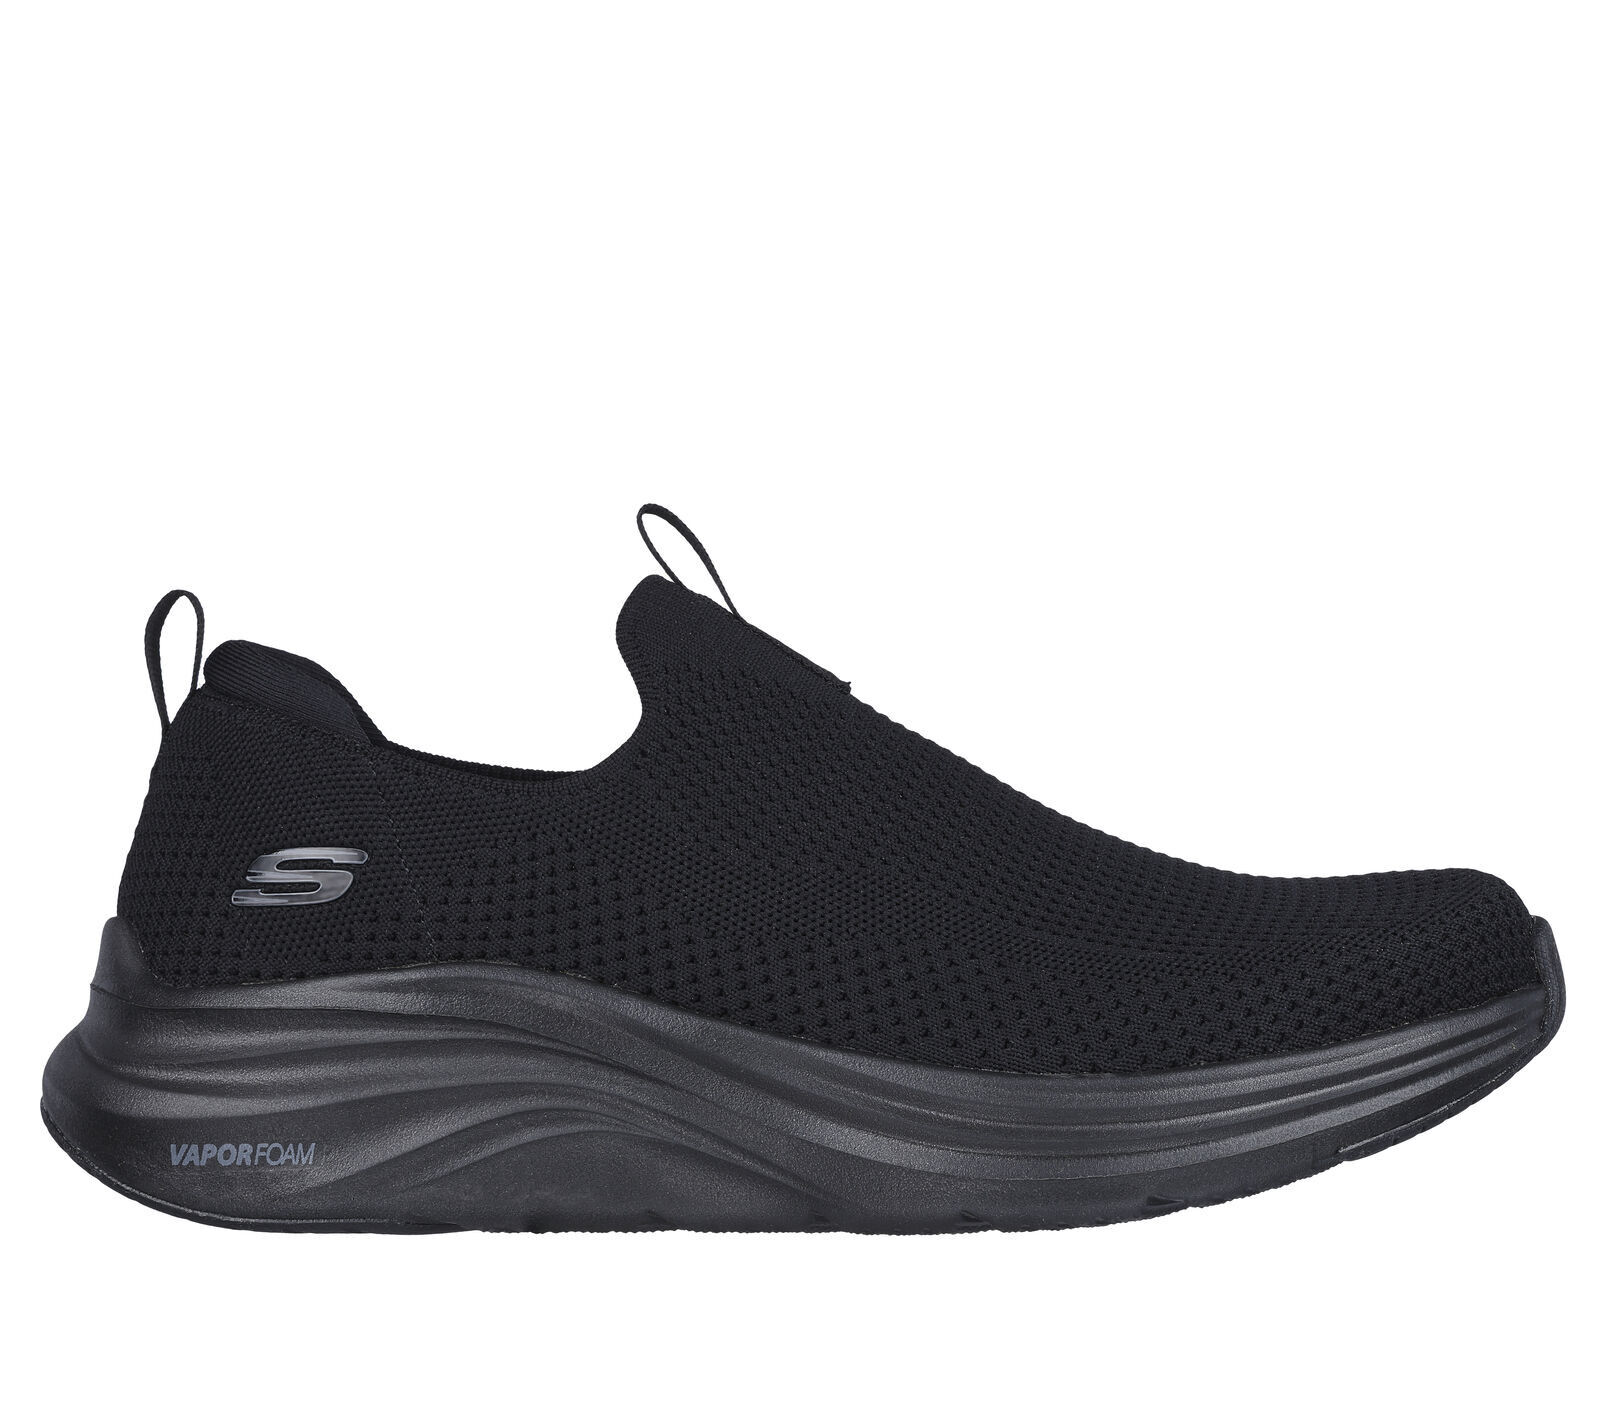 Skechers Vapor Foam - Covert - Lifestyle Schuhe - Herren | Hardloop